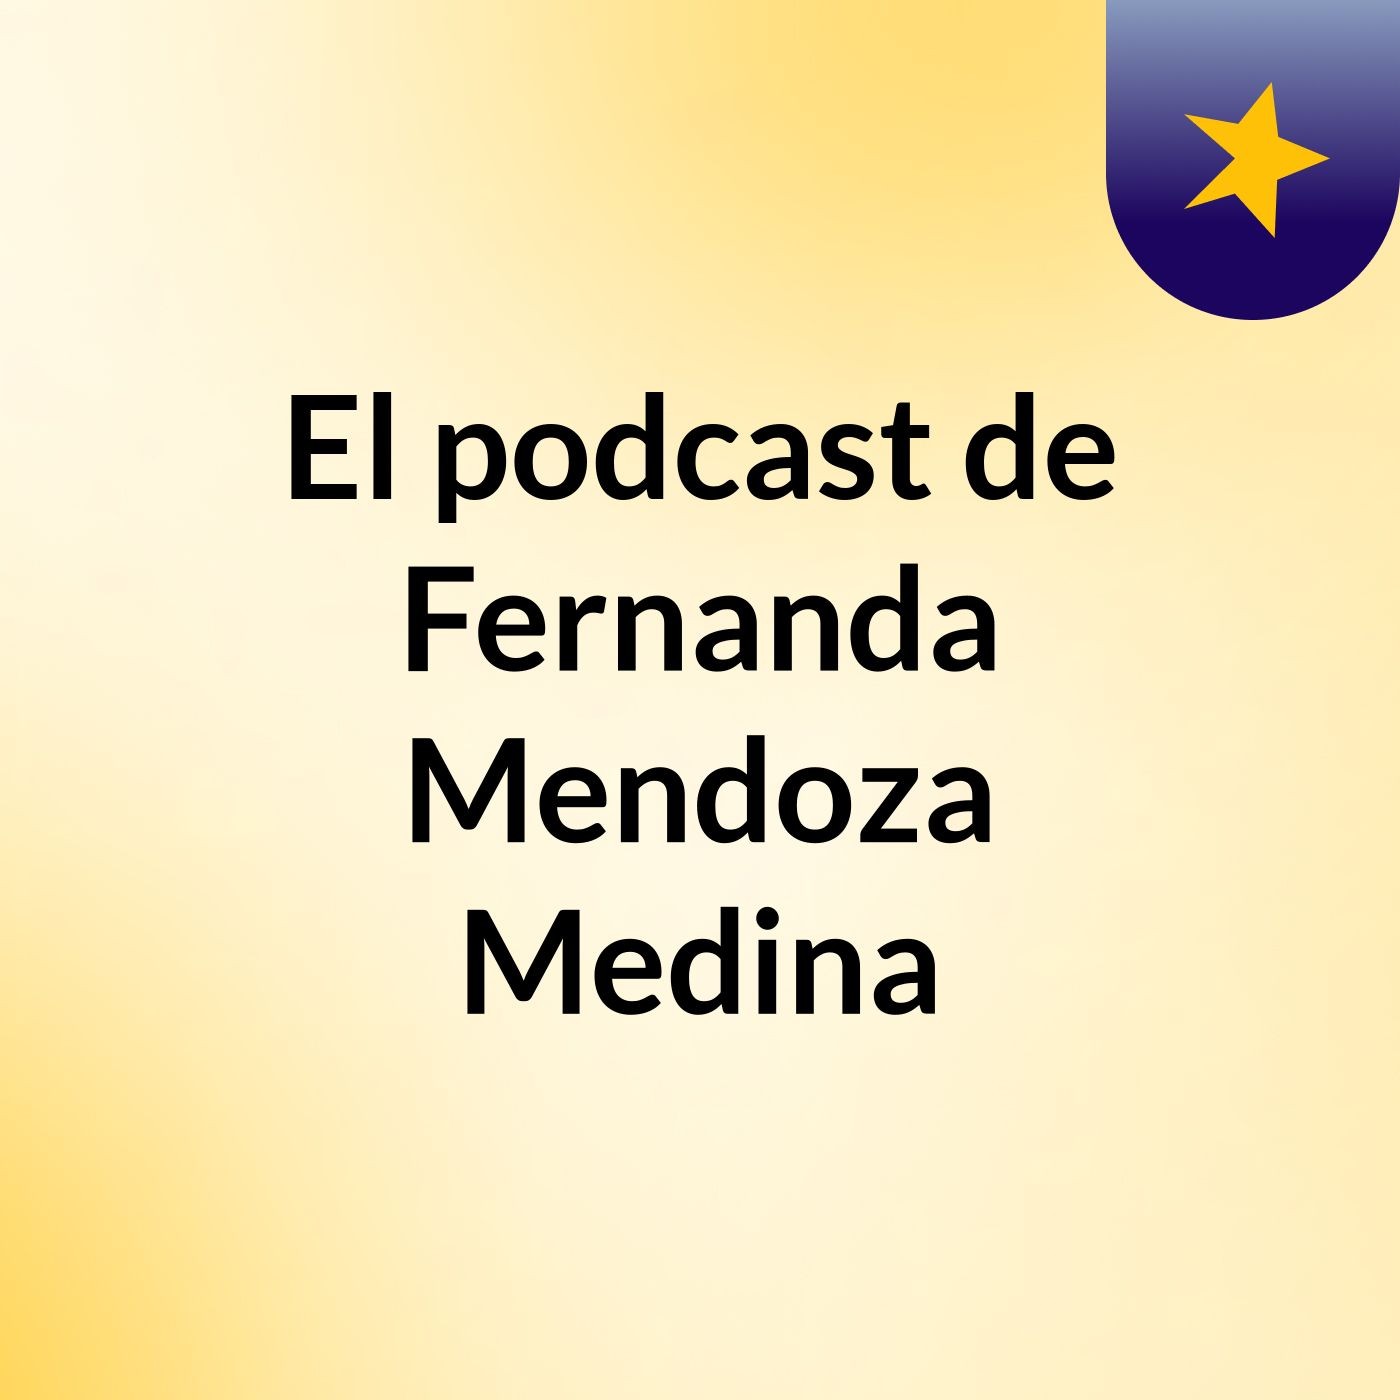 El podcast de Fernanda Mendoza Medina